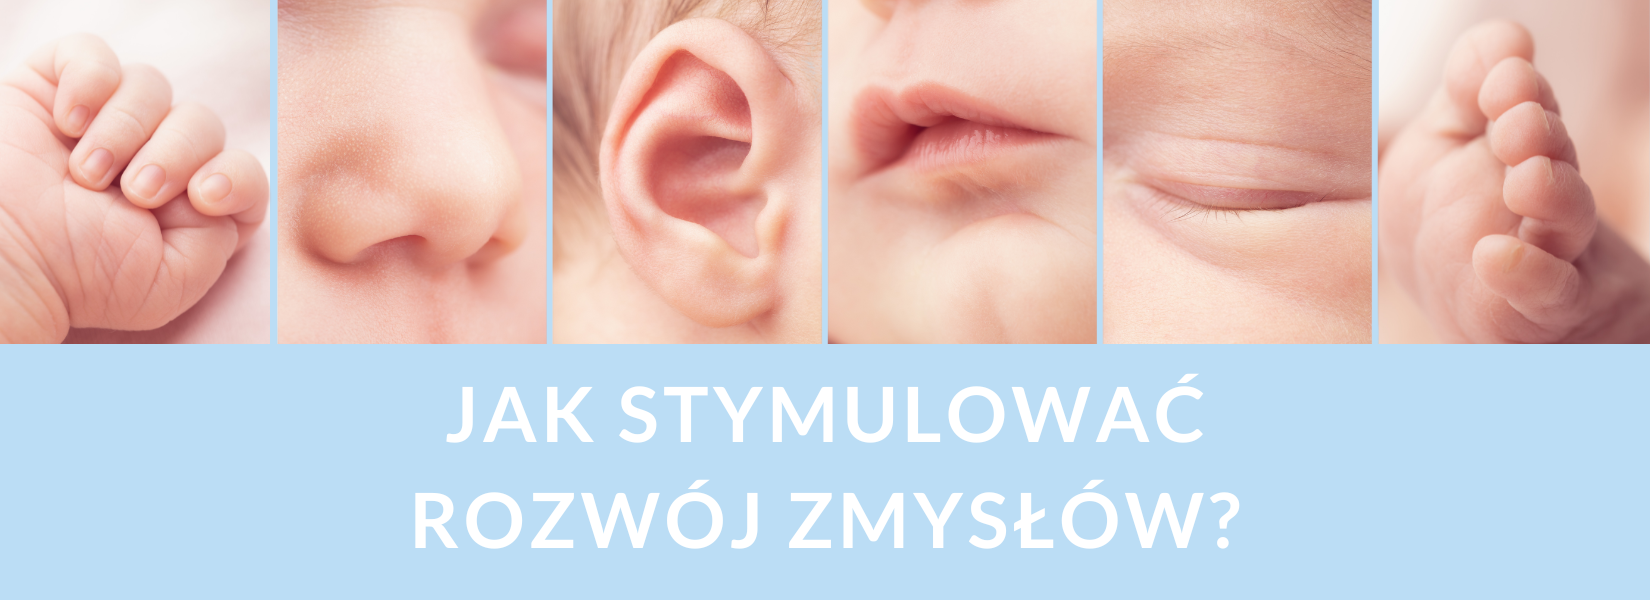 Jak stymulować rozwój zmysłów u niemowląt i małych dzieci?